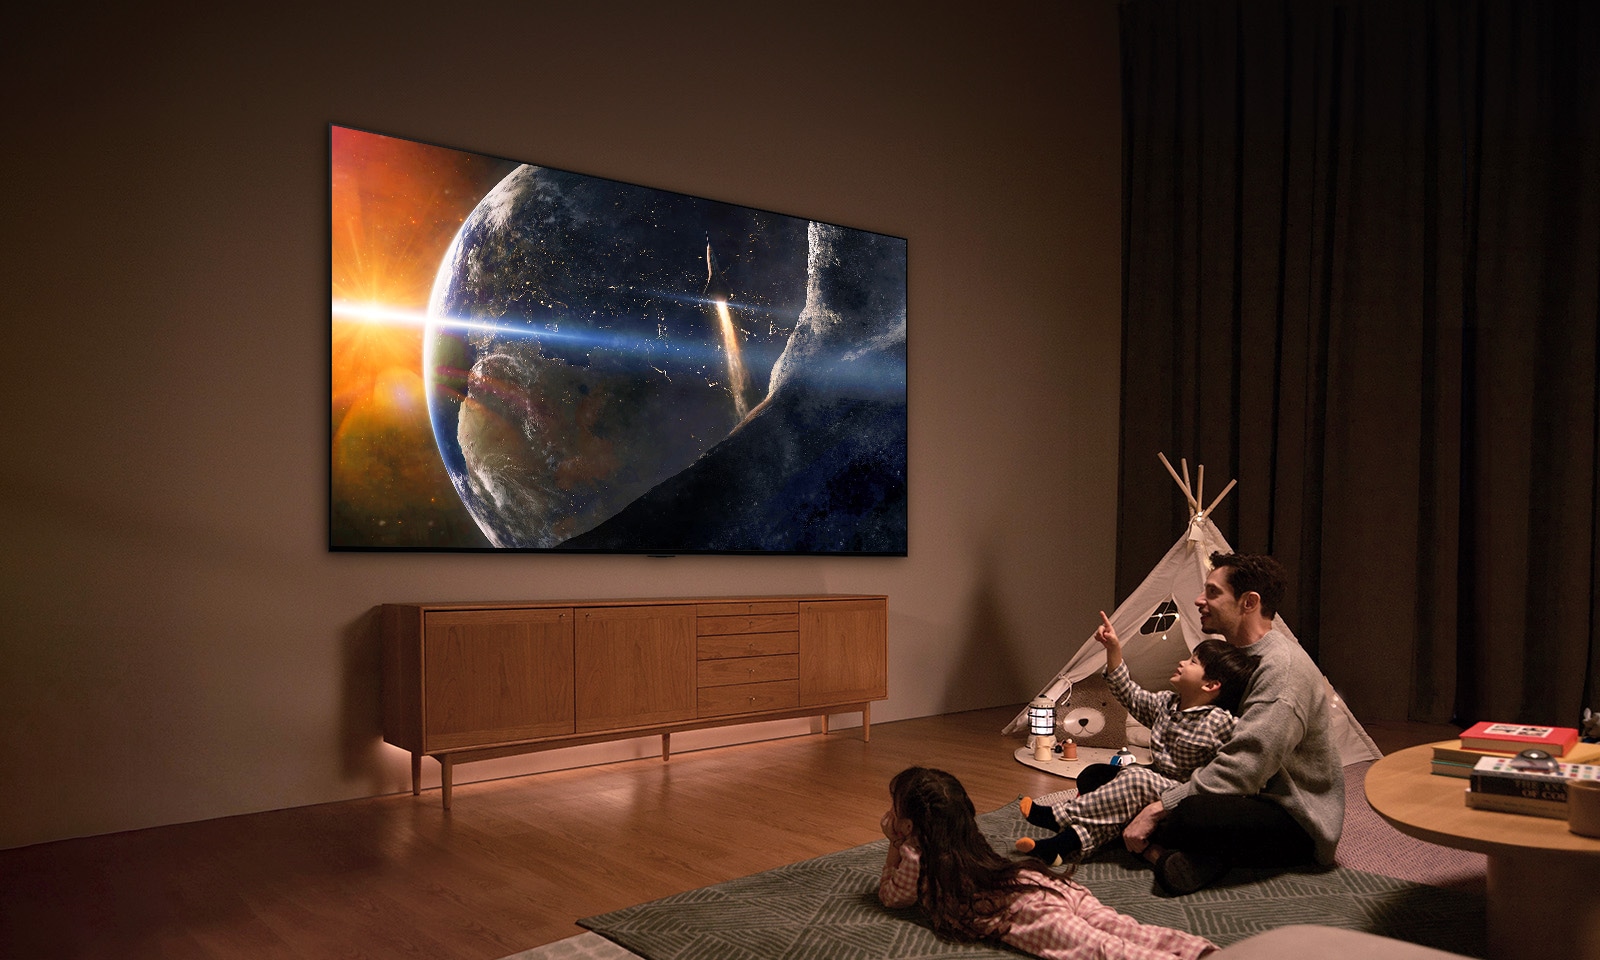 משפחה ישובה על הרצפה בסלון מואר באור עמום לצד שולחן קטן ומסתכלת על טלוויזיית LG התלויה על הקיר ומציגה את כדור הארץ מהחלל.